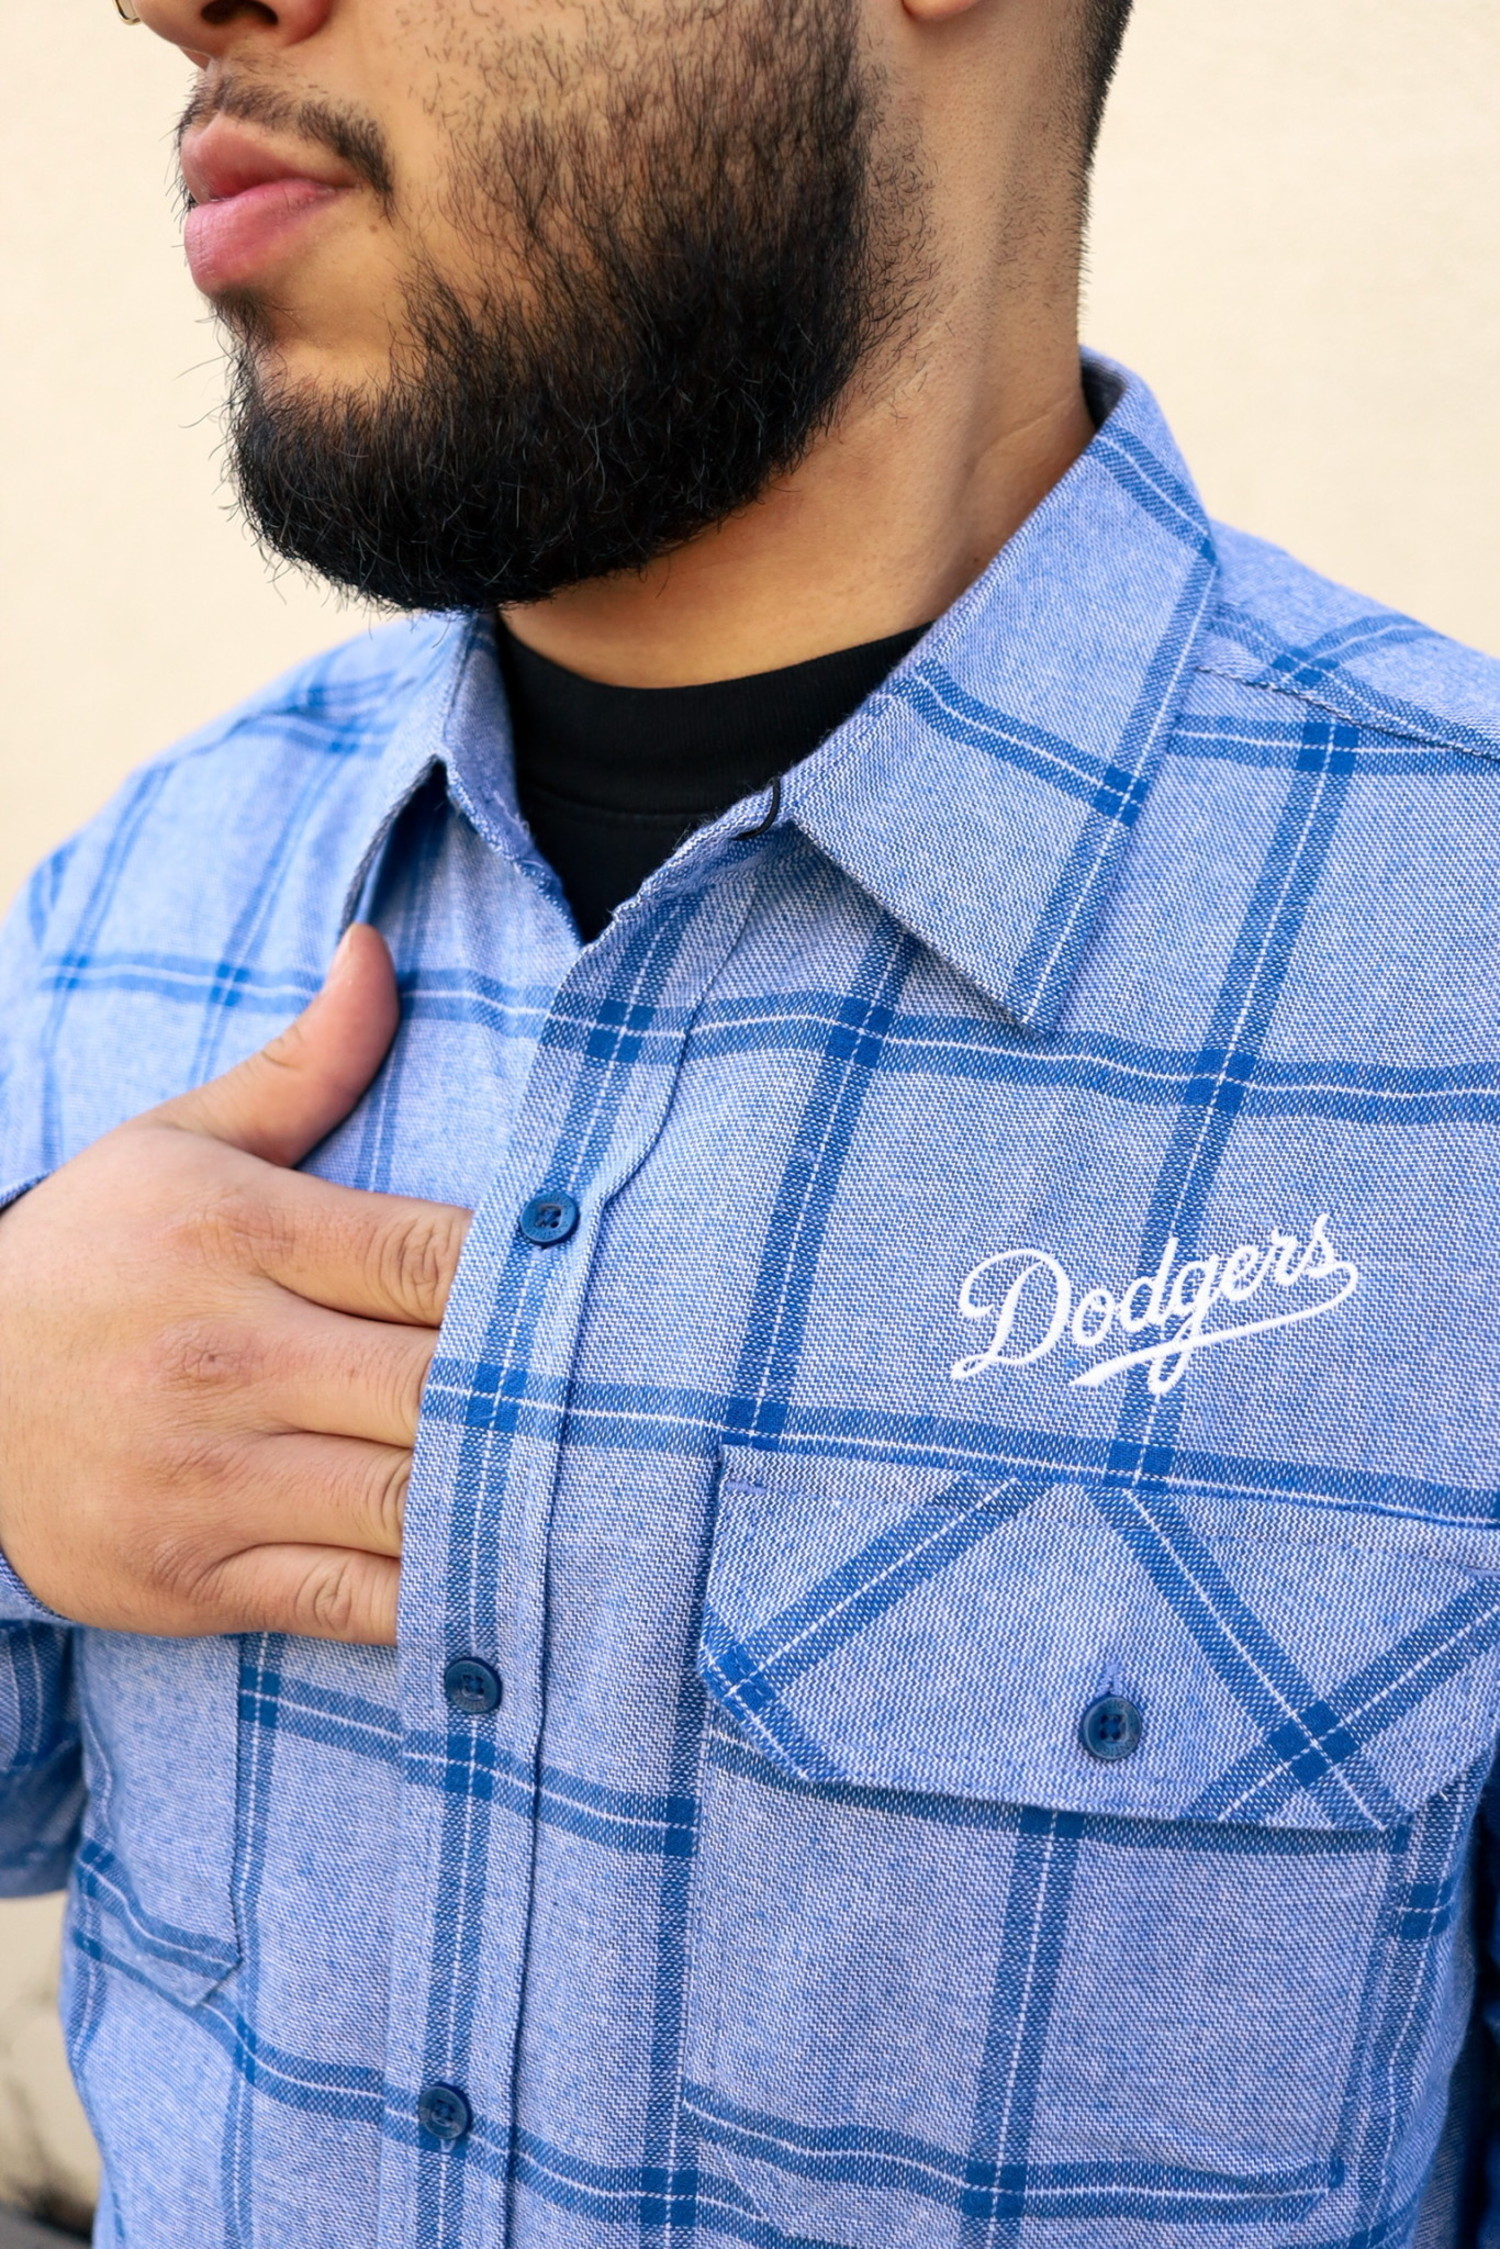 L.A. Dodgers Sweaters, Dodgers Button-Up Shirts, Dress Shirt